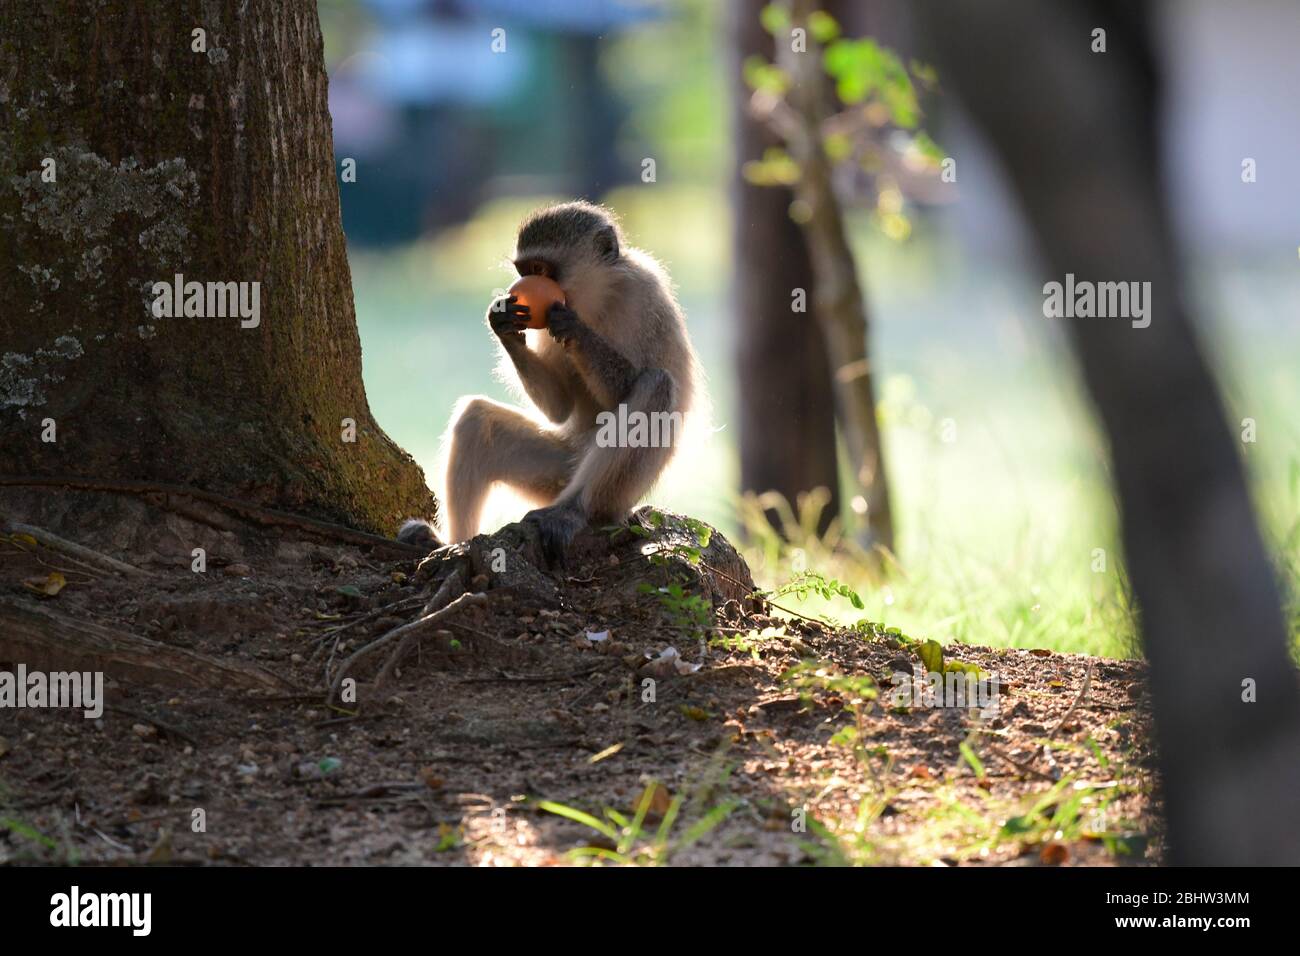 Playful vervet monkeys in Kruger National Park, South Africa Stock Photo